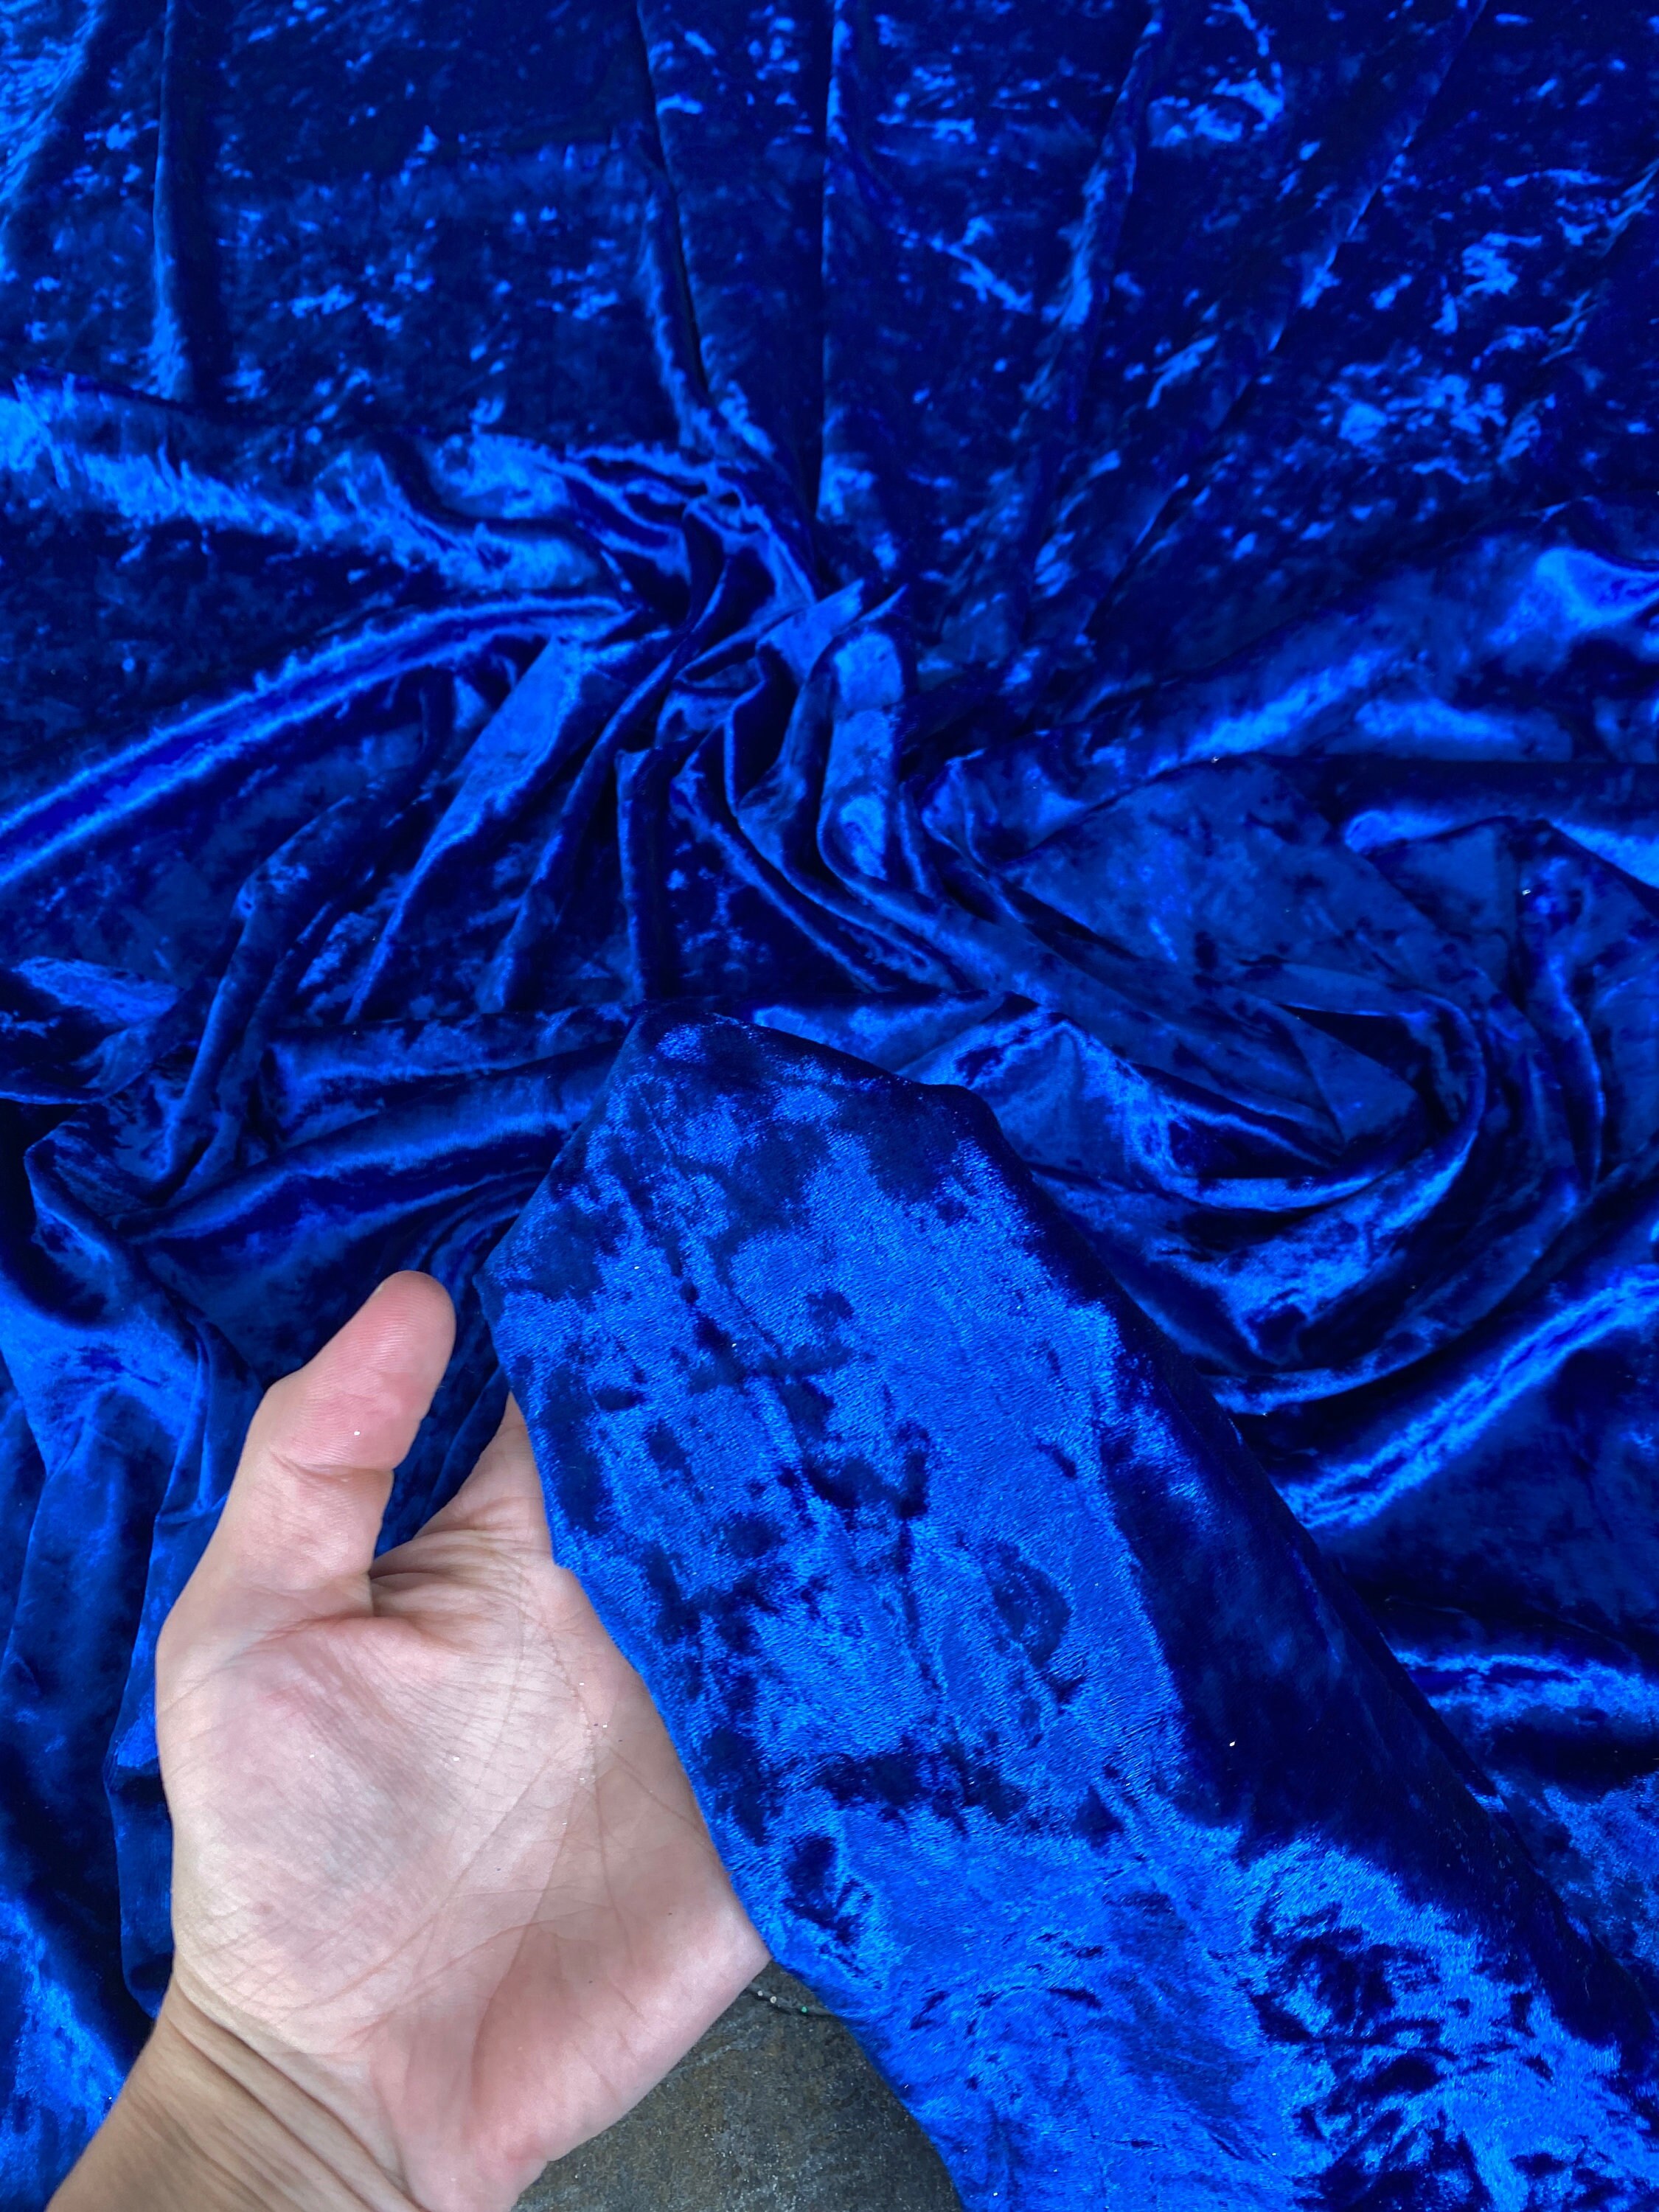 Stretch Silk Velvet Fabric by the Yard Crushed Velvet Material French Blue  Dress Velvet Fabric 